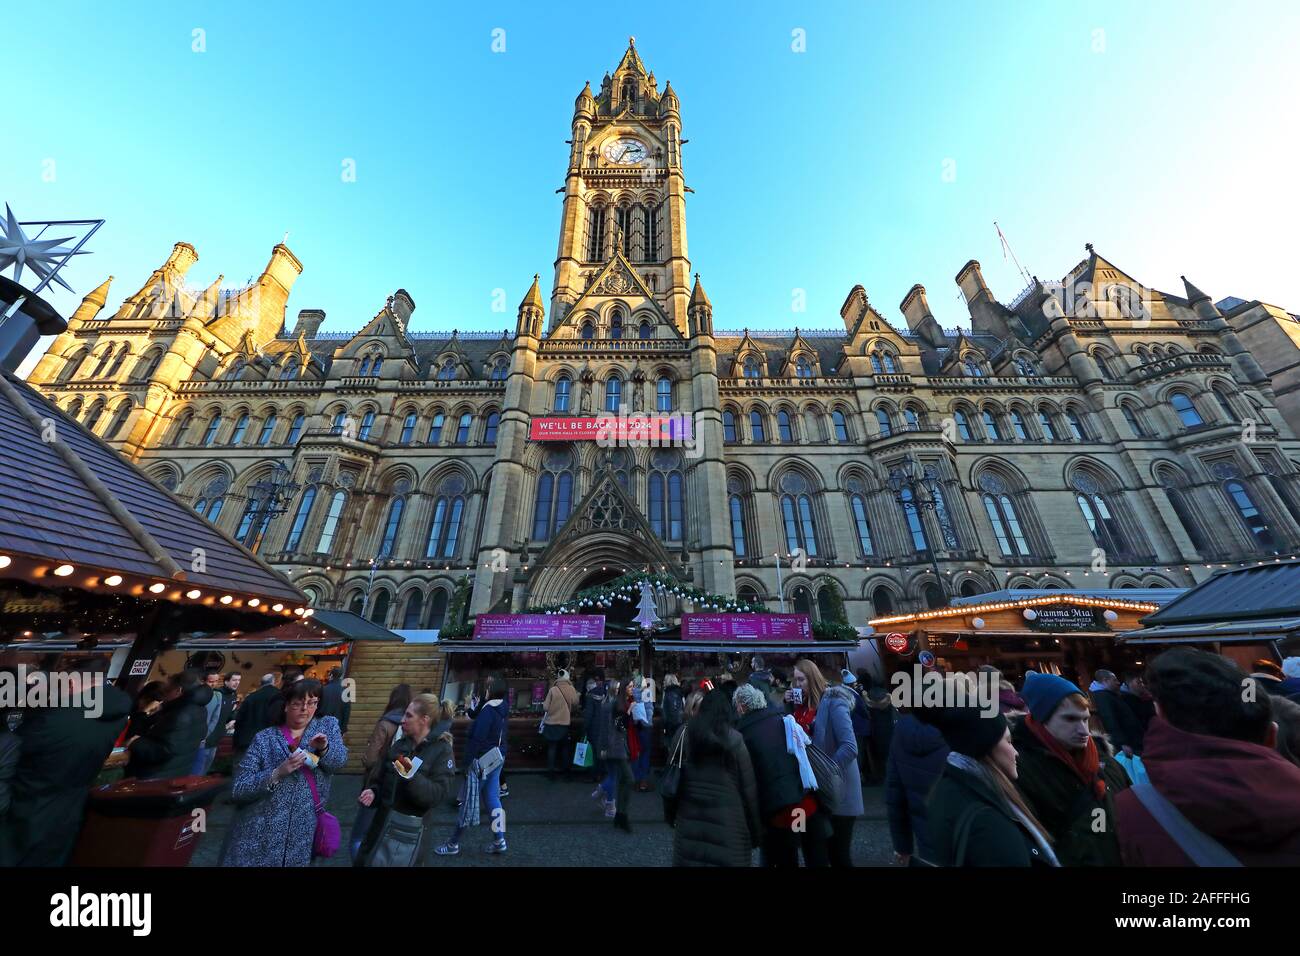 Weihnachtsmärkte, Manchester Town Hall, Albert Square, Manchester, England, Großbritannien, M2 5 DB Stockfoto